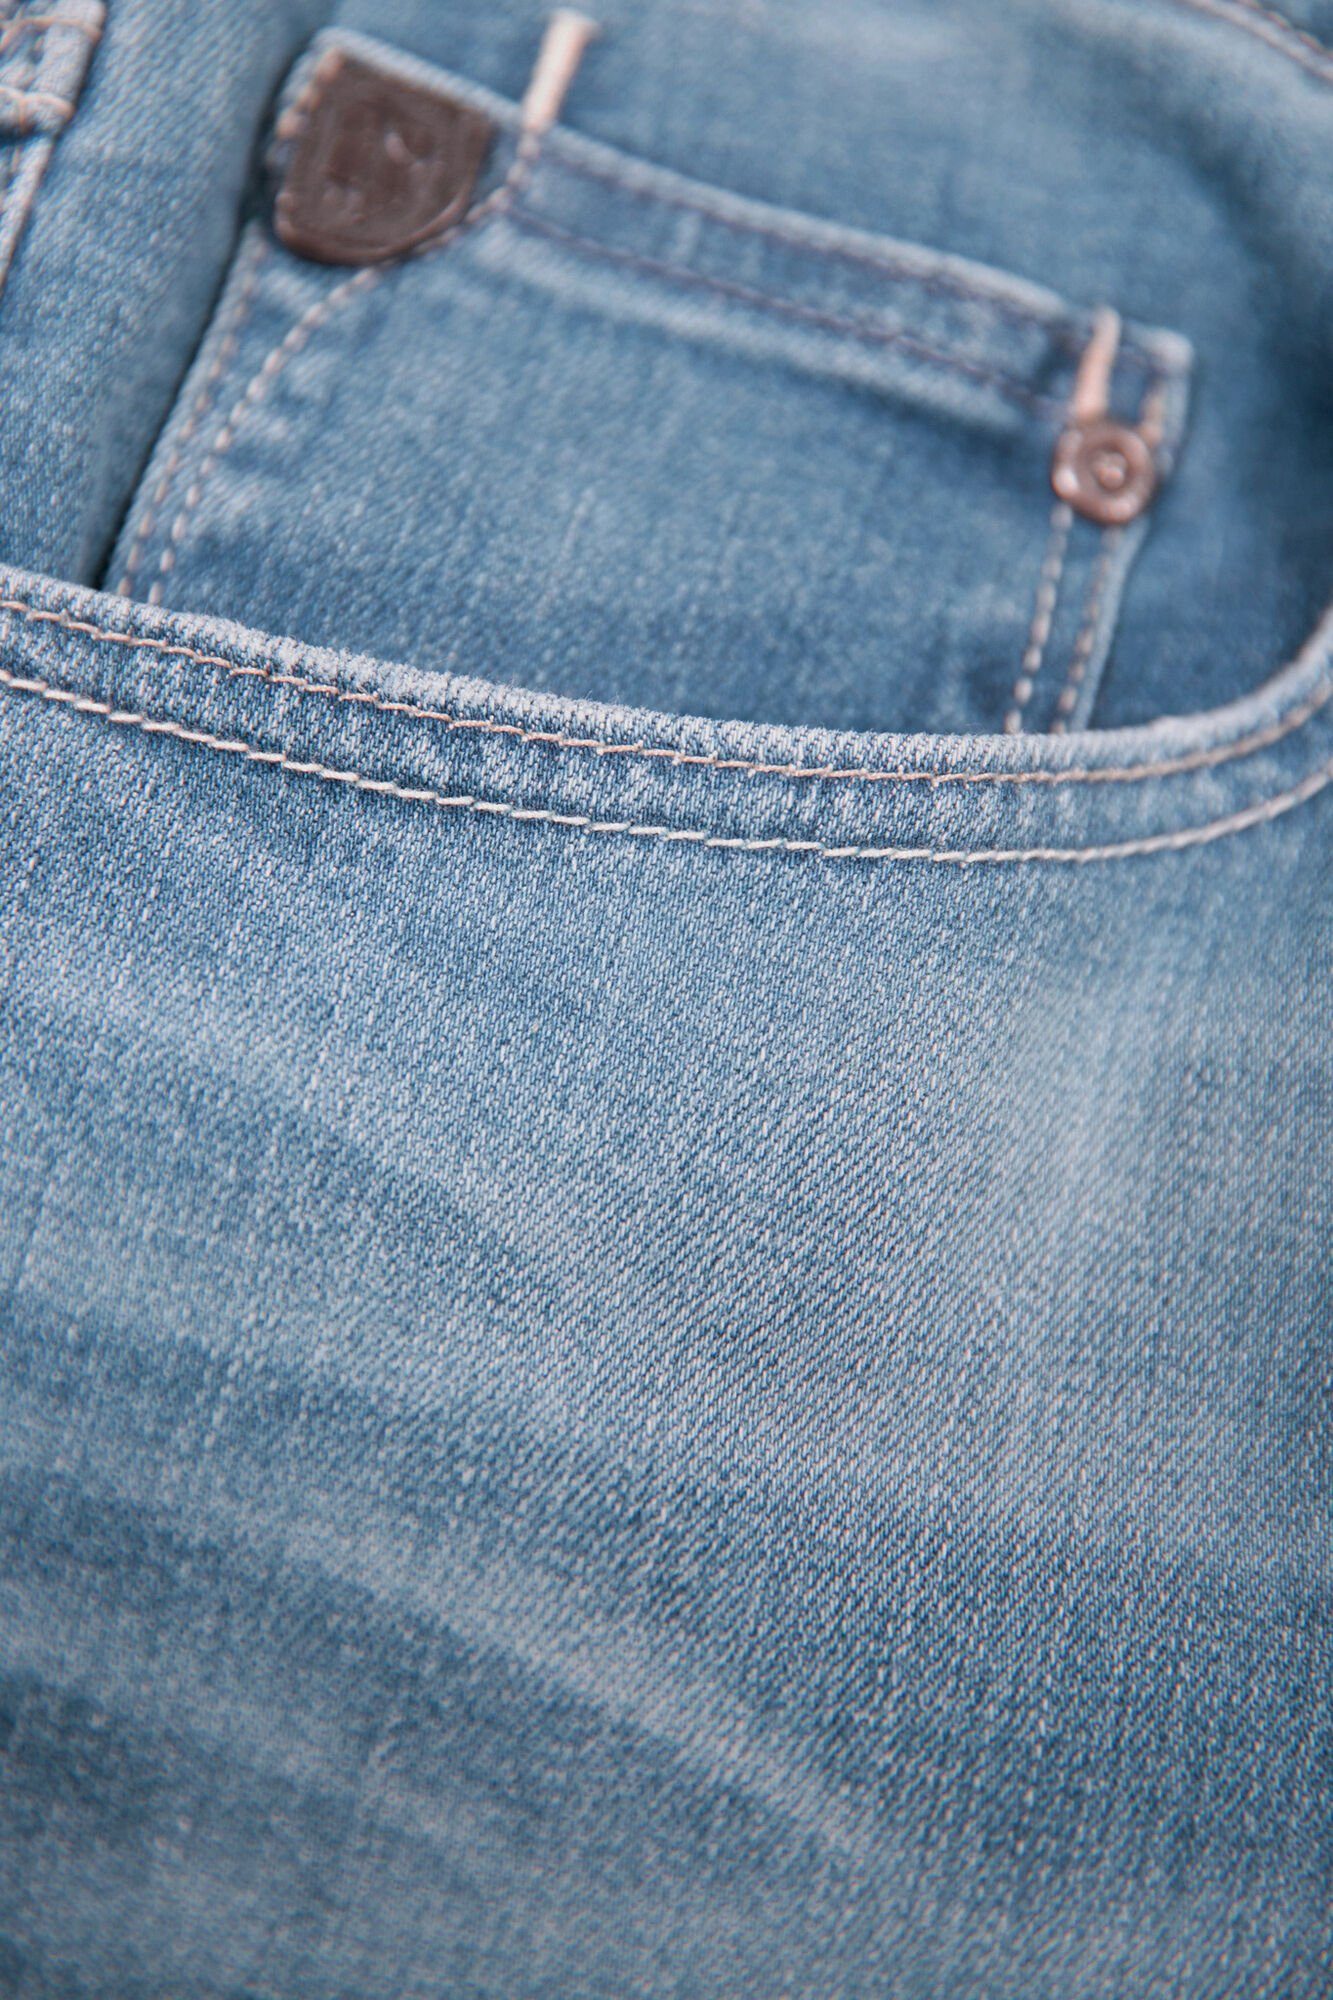 GARCIA JEANS 5-Pocket-Jeans Denim light used Motion - blue 611.6545 GARCIA RUSSO